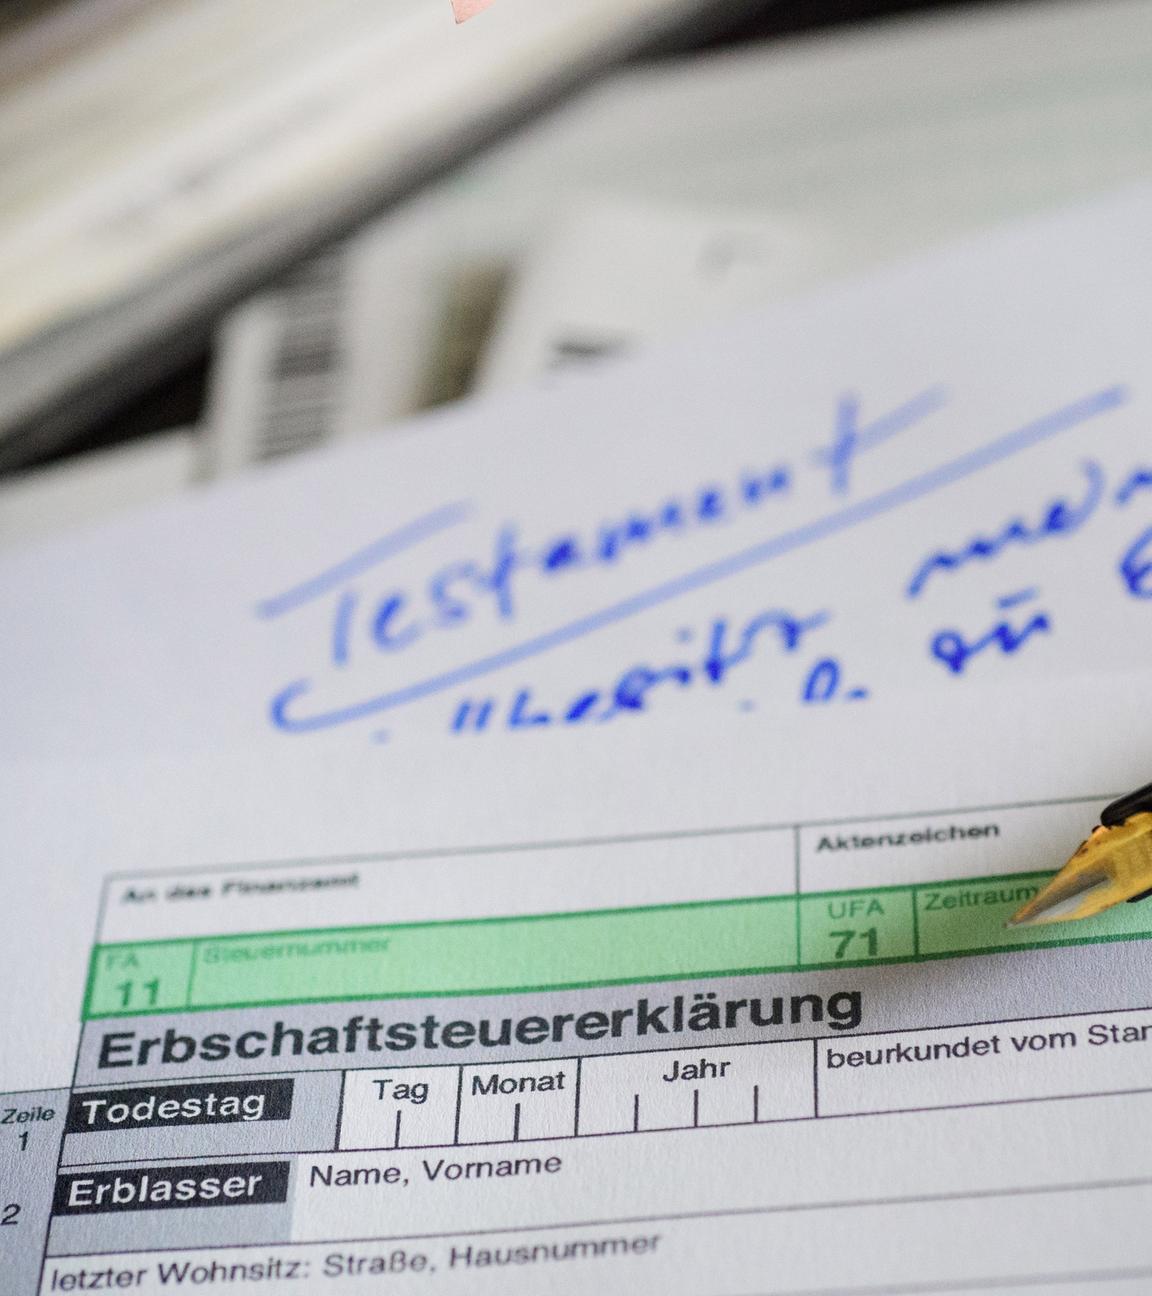 Ein Formular zur Erbschaftssteuer liegt über einem Papier mit der Aufschrift "Testament".